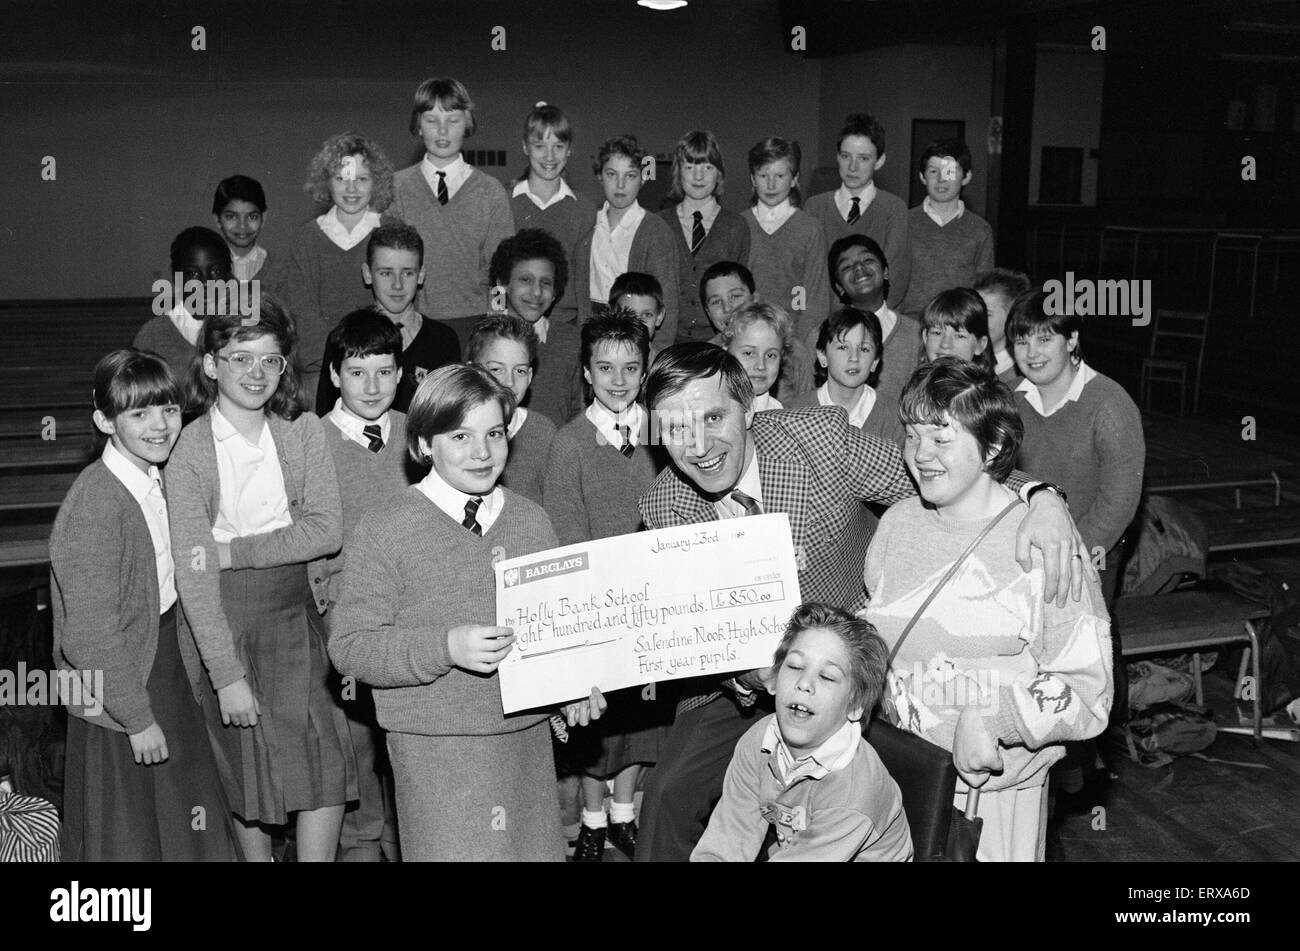 Schüler von Salendine Nook High School präsentieren einen Scheck im Wert von 850 Poounds John Proctor, kommissarischer Leiter der Holly Bank Schule, für ihre neuen Räume in Mirfield, 26. Januar 1989. Stockfoto